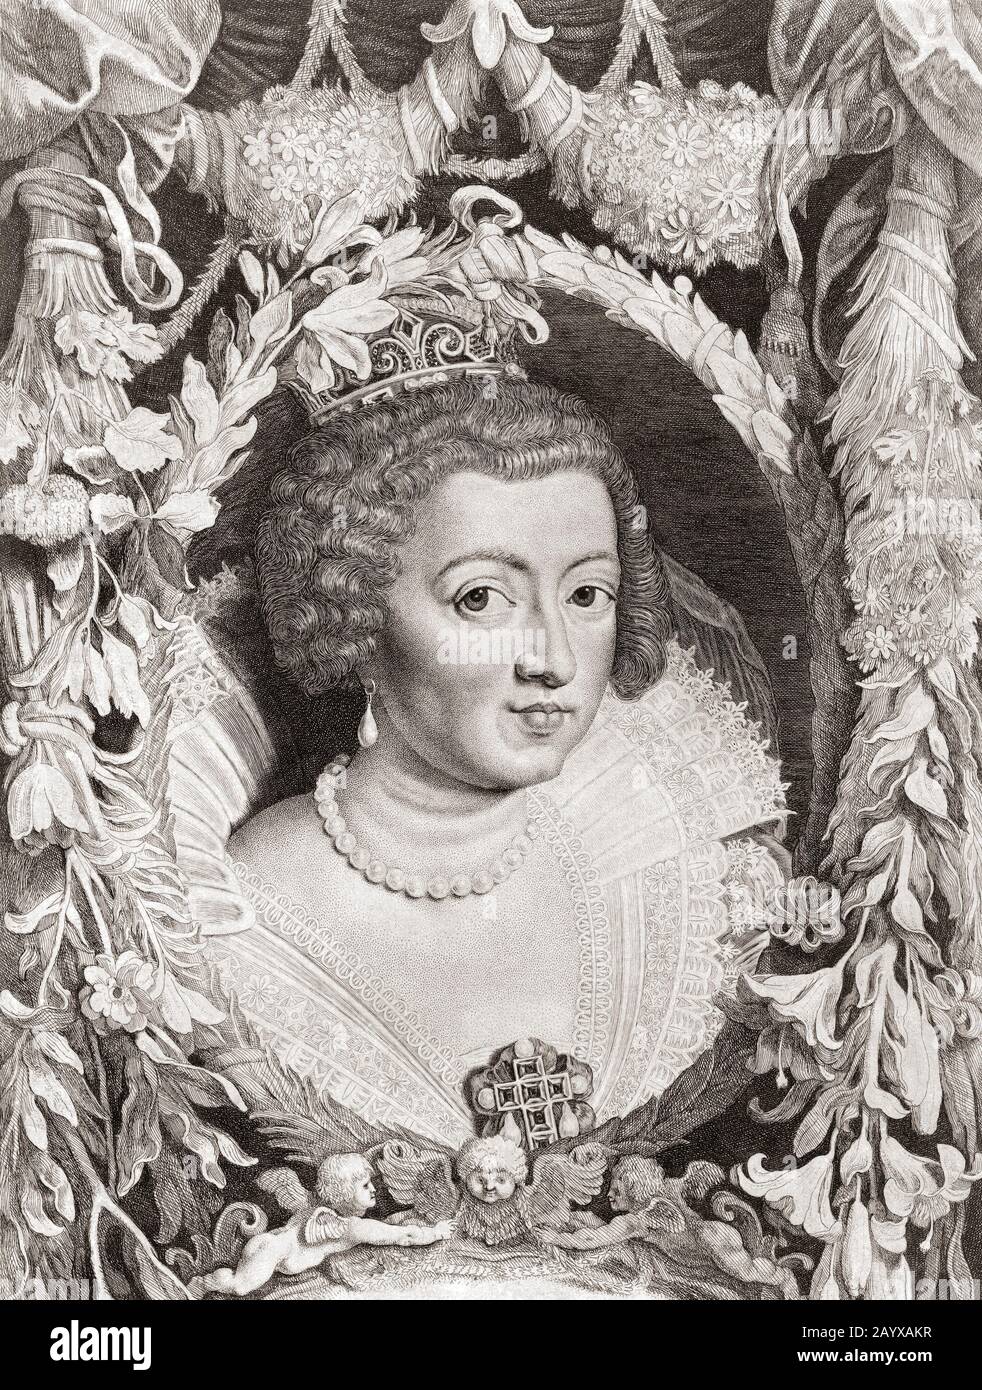 Anne d'Autriche, 1601 - 1666. Reine Consort de France et regent pour son fils Louis XIV de France. A partir d'une gravure du XVIIe siècle après une oeuvre de Peter Paul Rubens. Banque D'Images